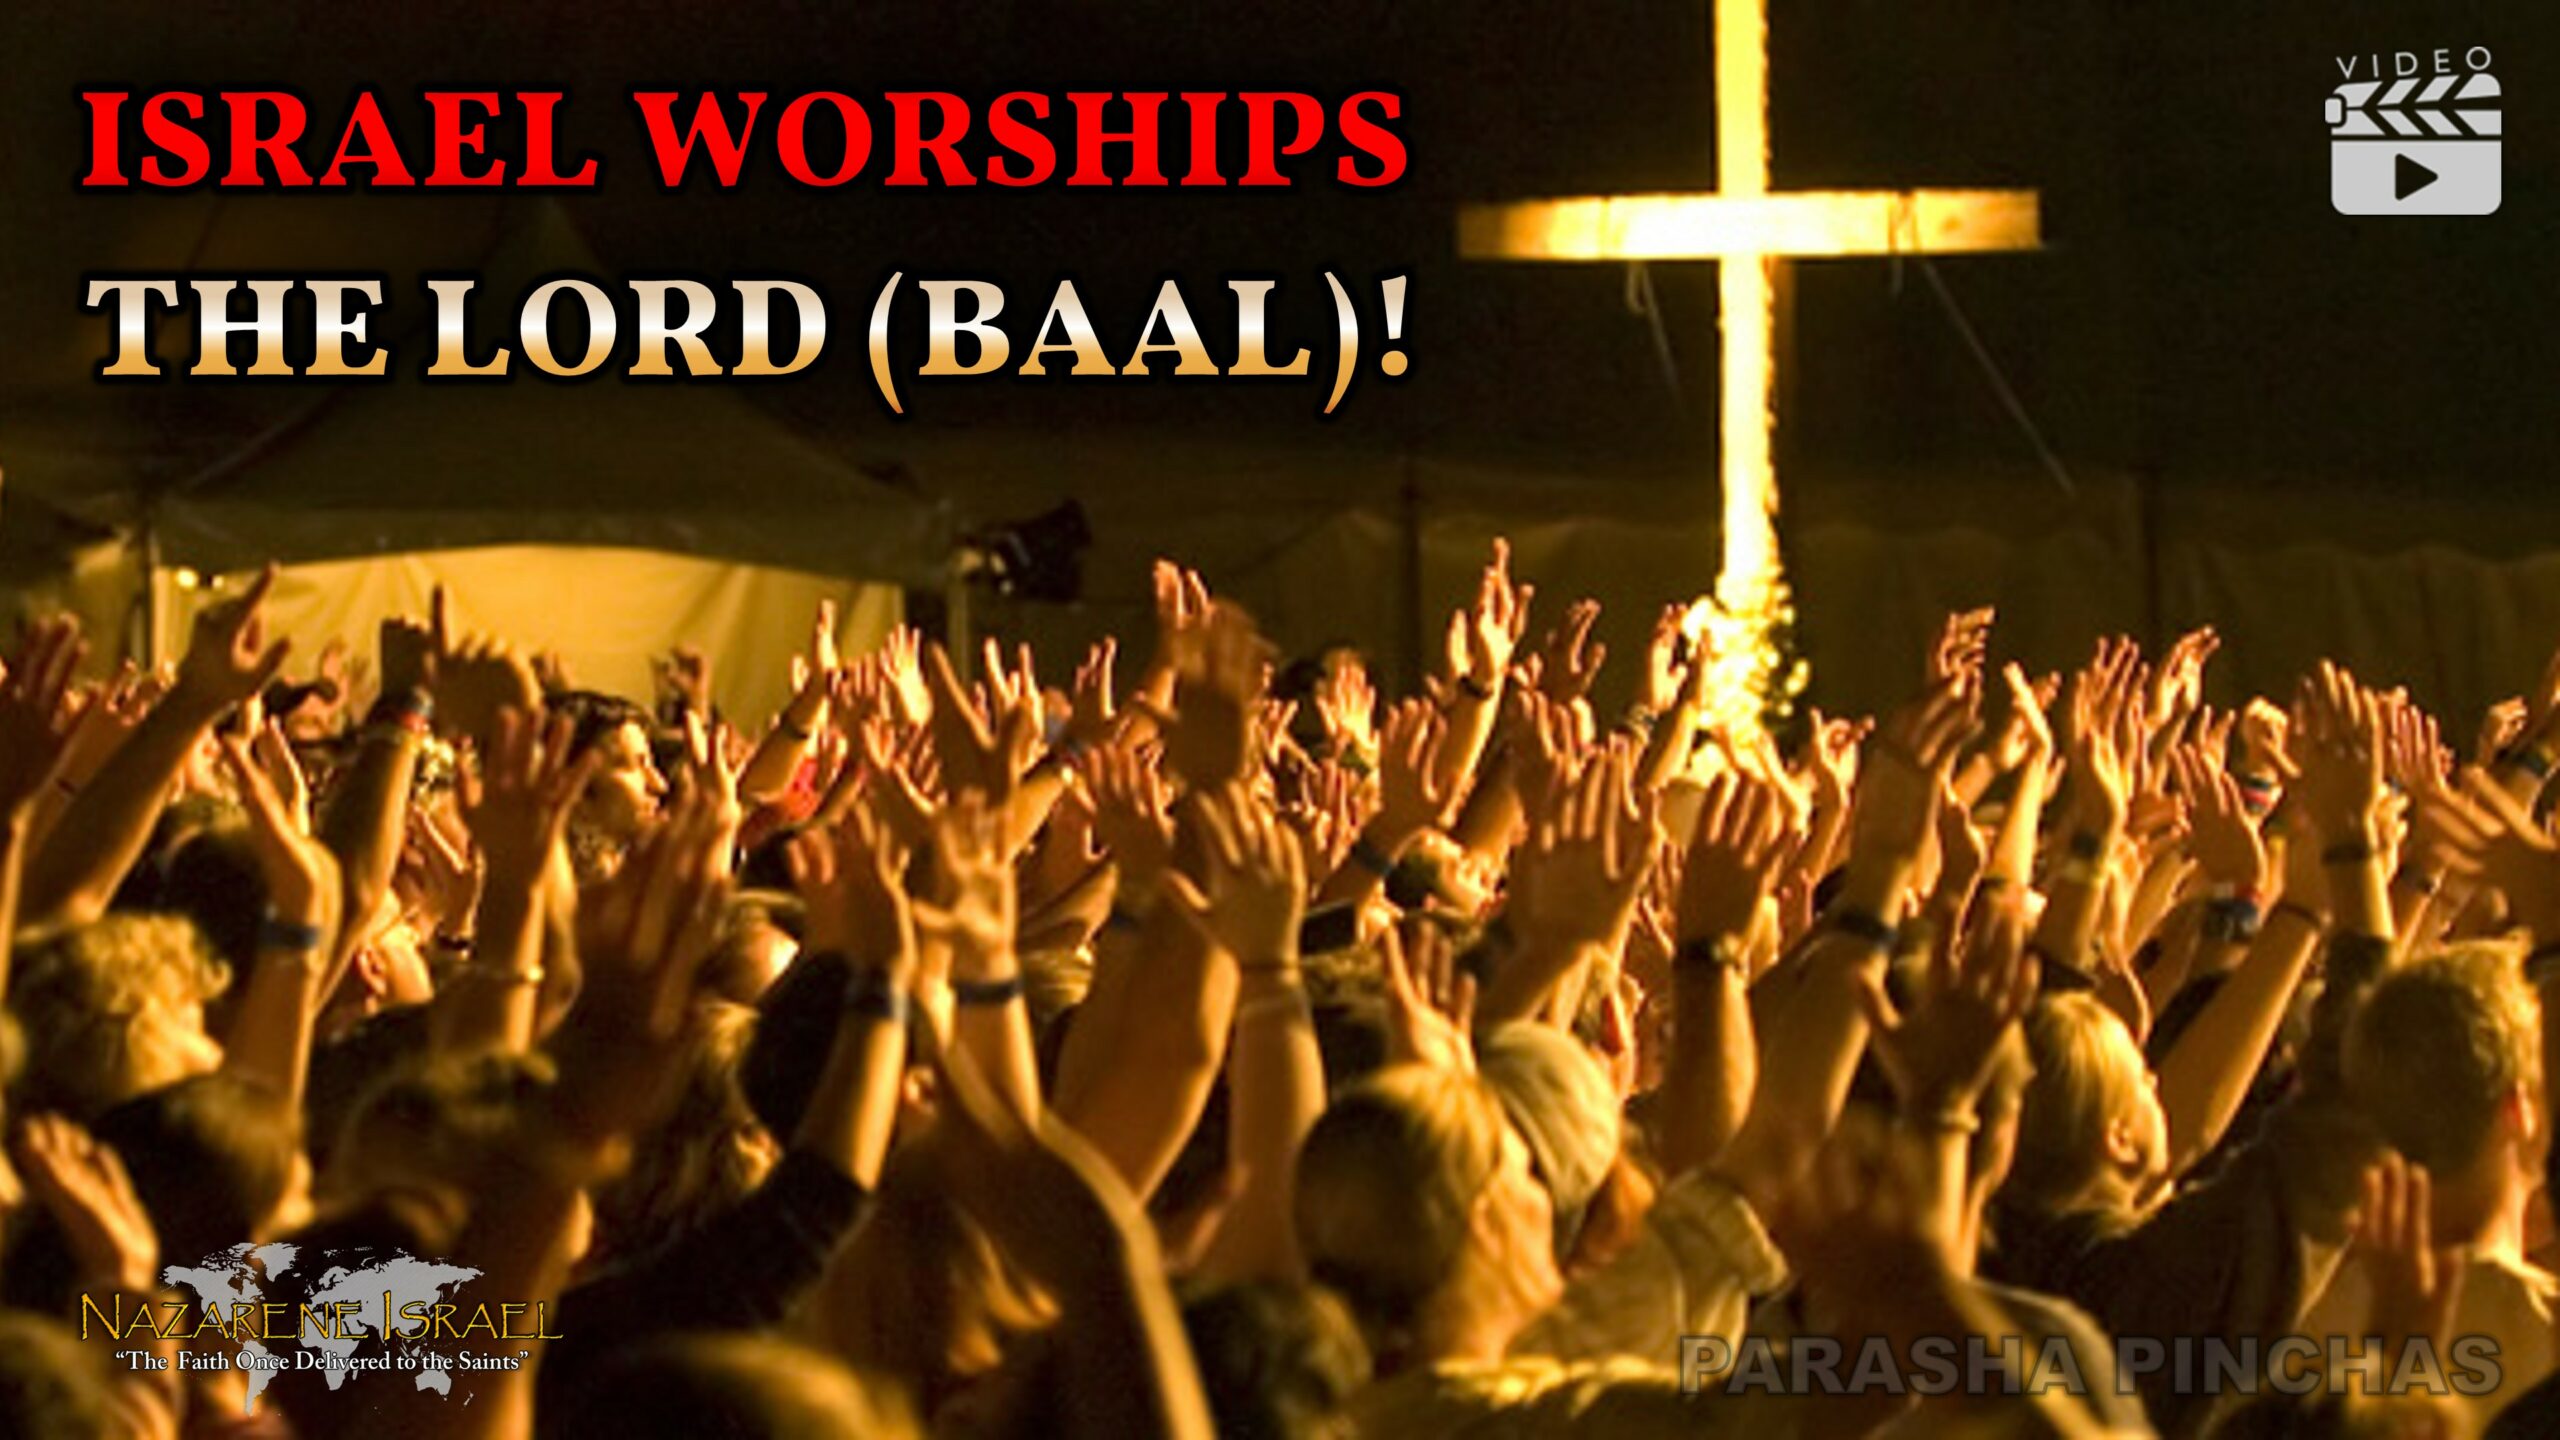 Parasha Pinchas 2022: Israel Worships THE LORD (BAAL)!